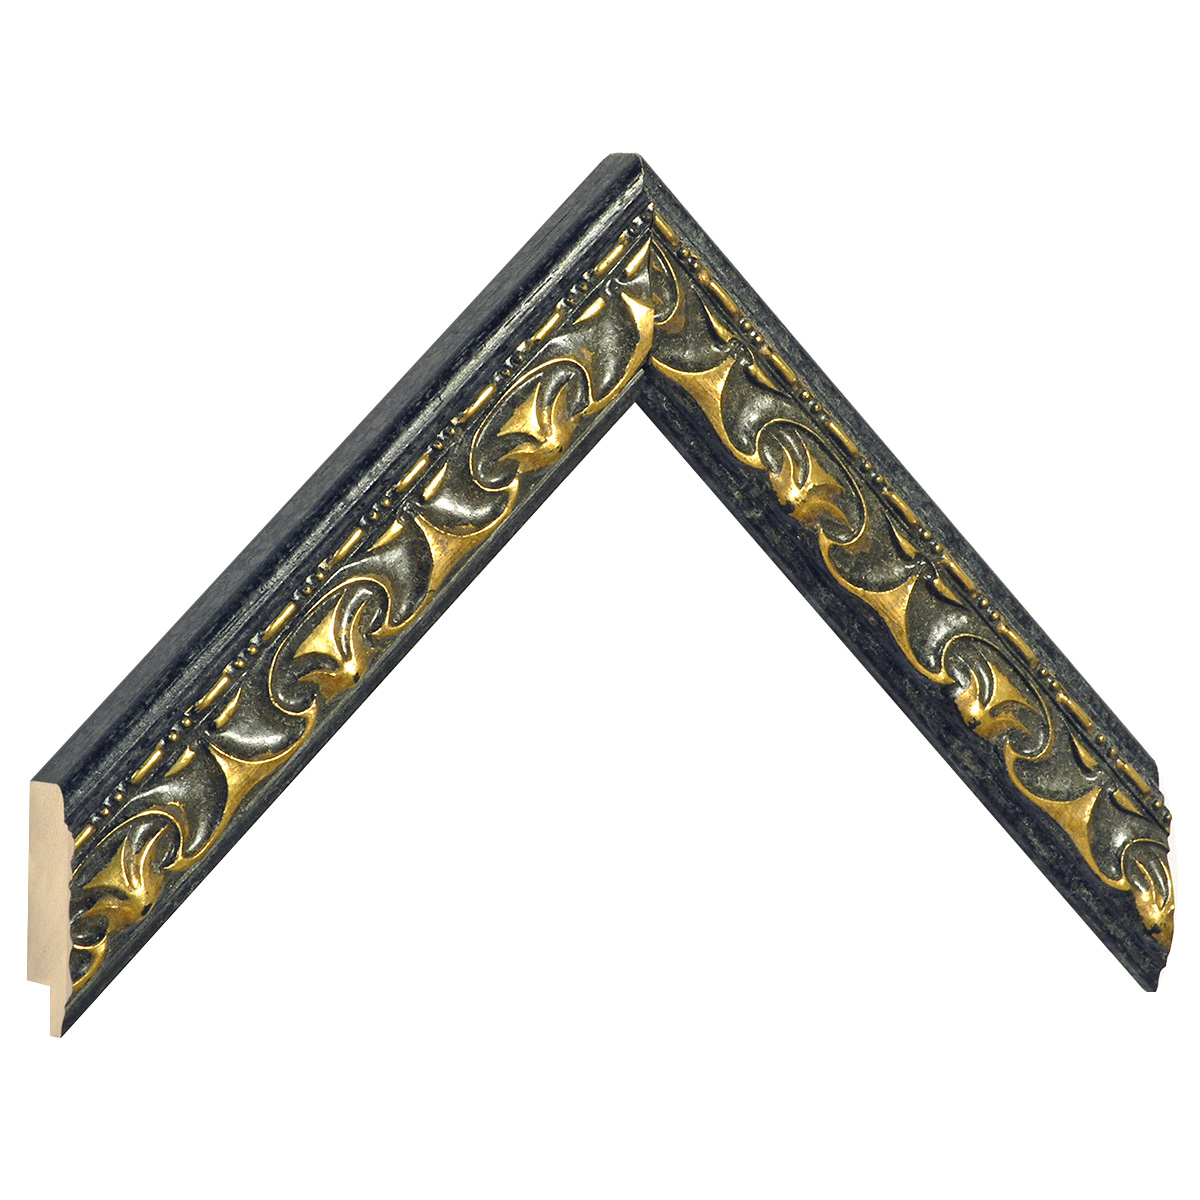 Profil ayous negru cu decorațiuni aurii în relief - Mostră